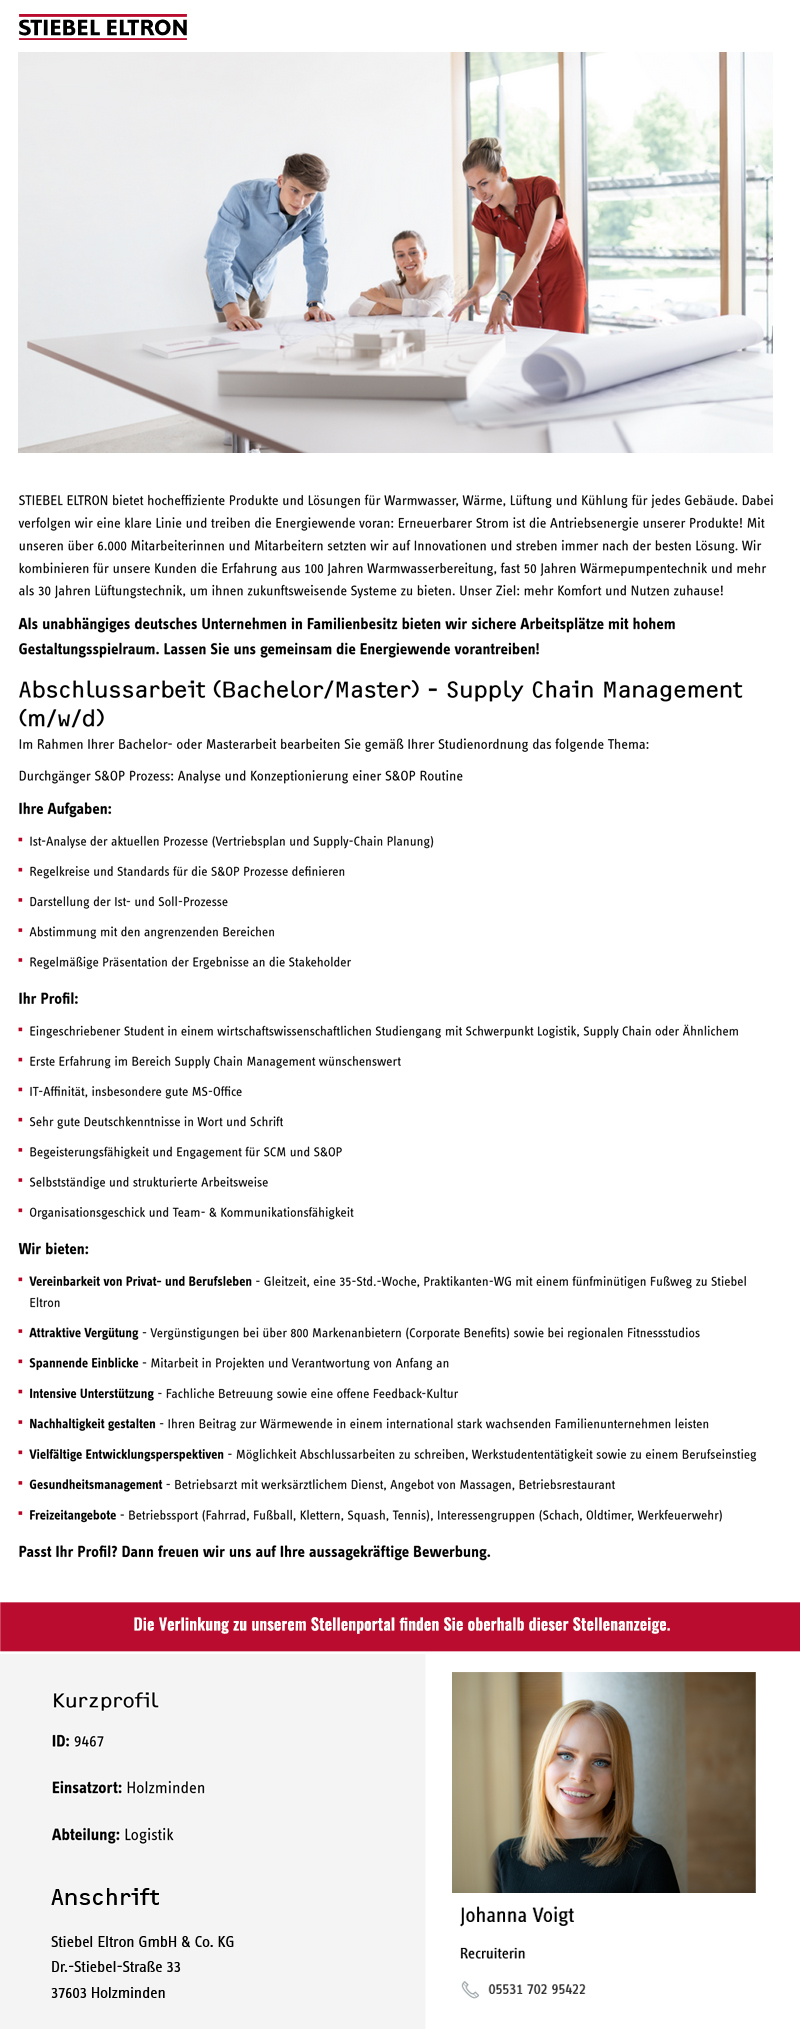 Abschlussarbeit (Bachelor/Master) - Supply Chain Management (m/w/d) - Stiebel Eltron GmbH & Co. KG